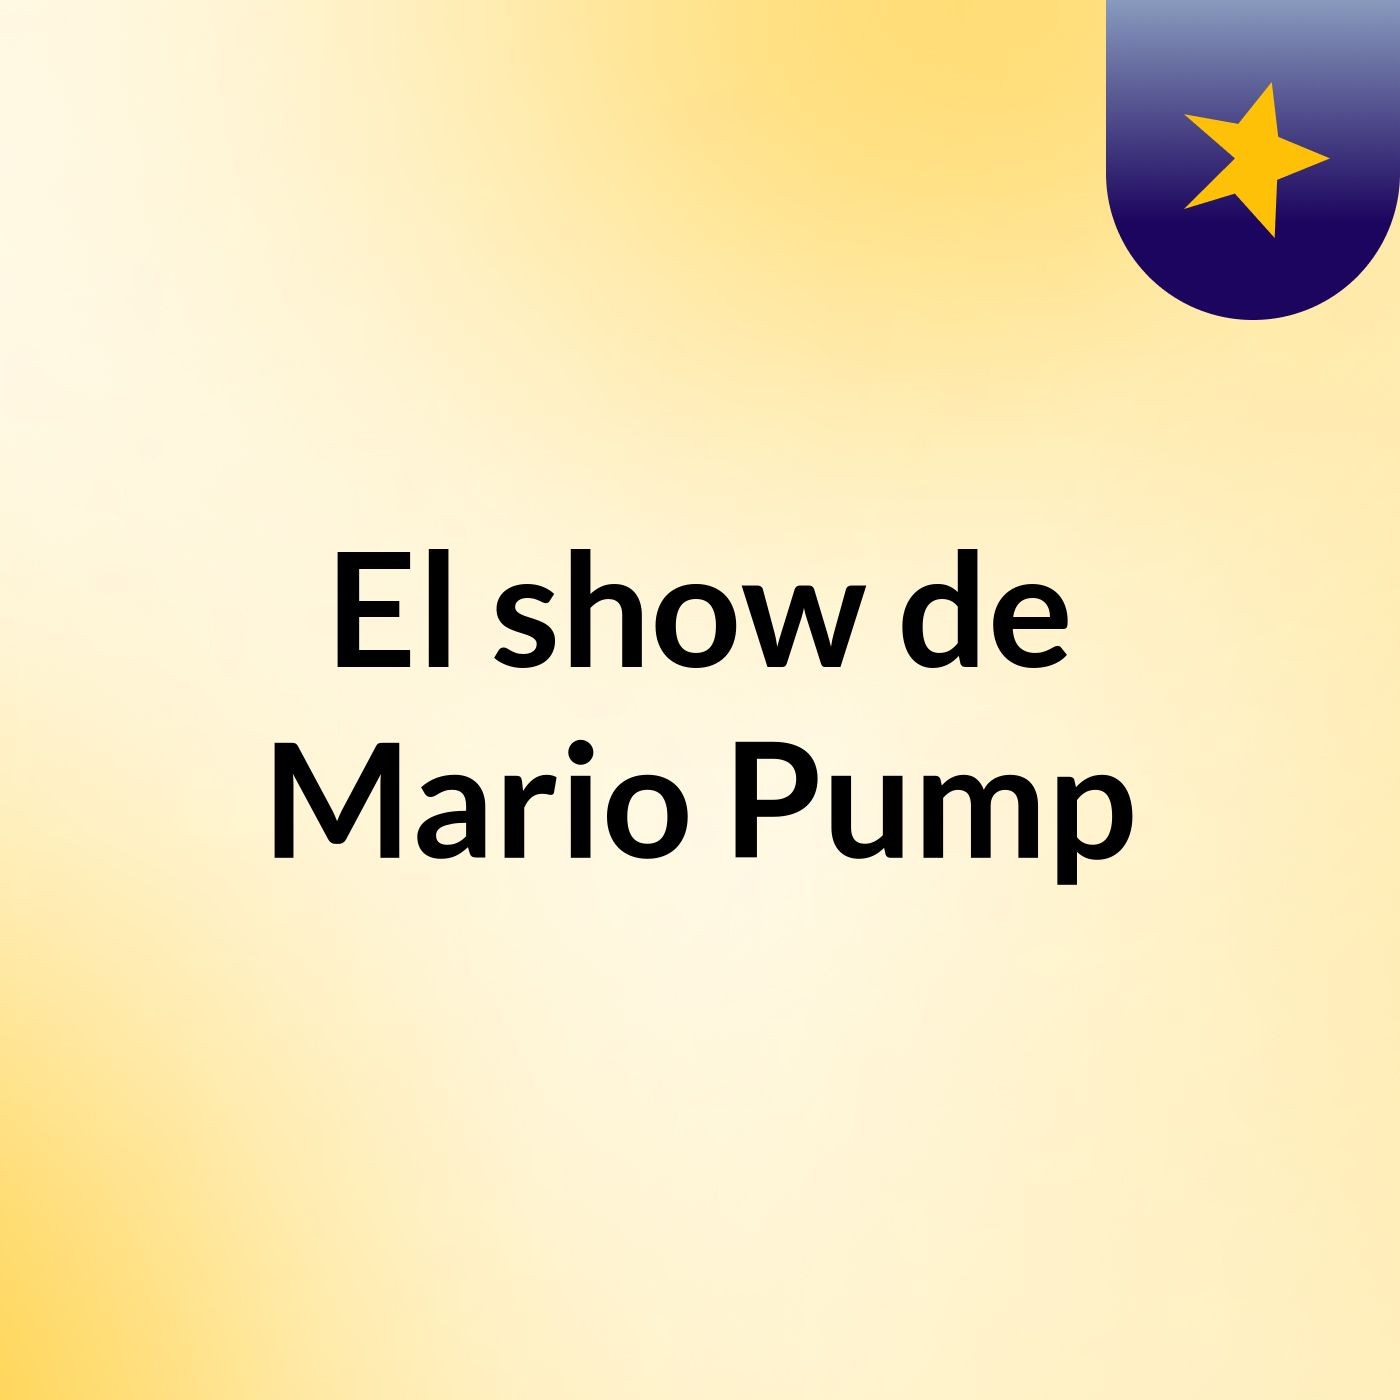 El show de Mario Pump